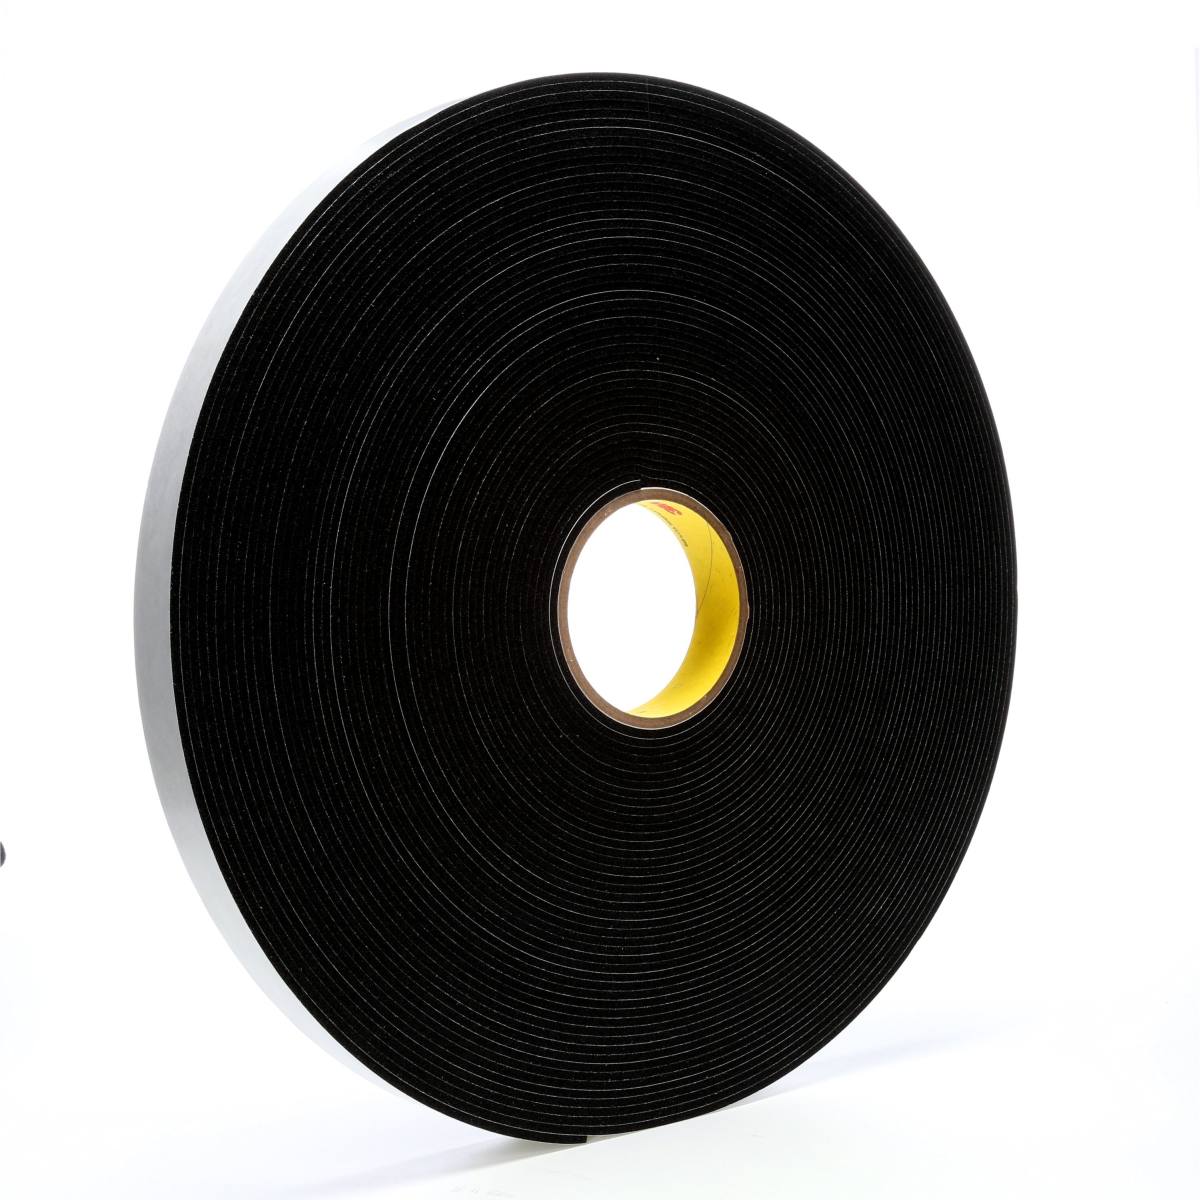 3M Ruban adhésif simple face en mousse de vinyle 4516, noir, 12 mm x 33 m